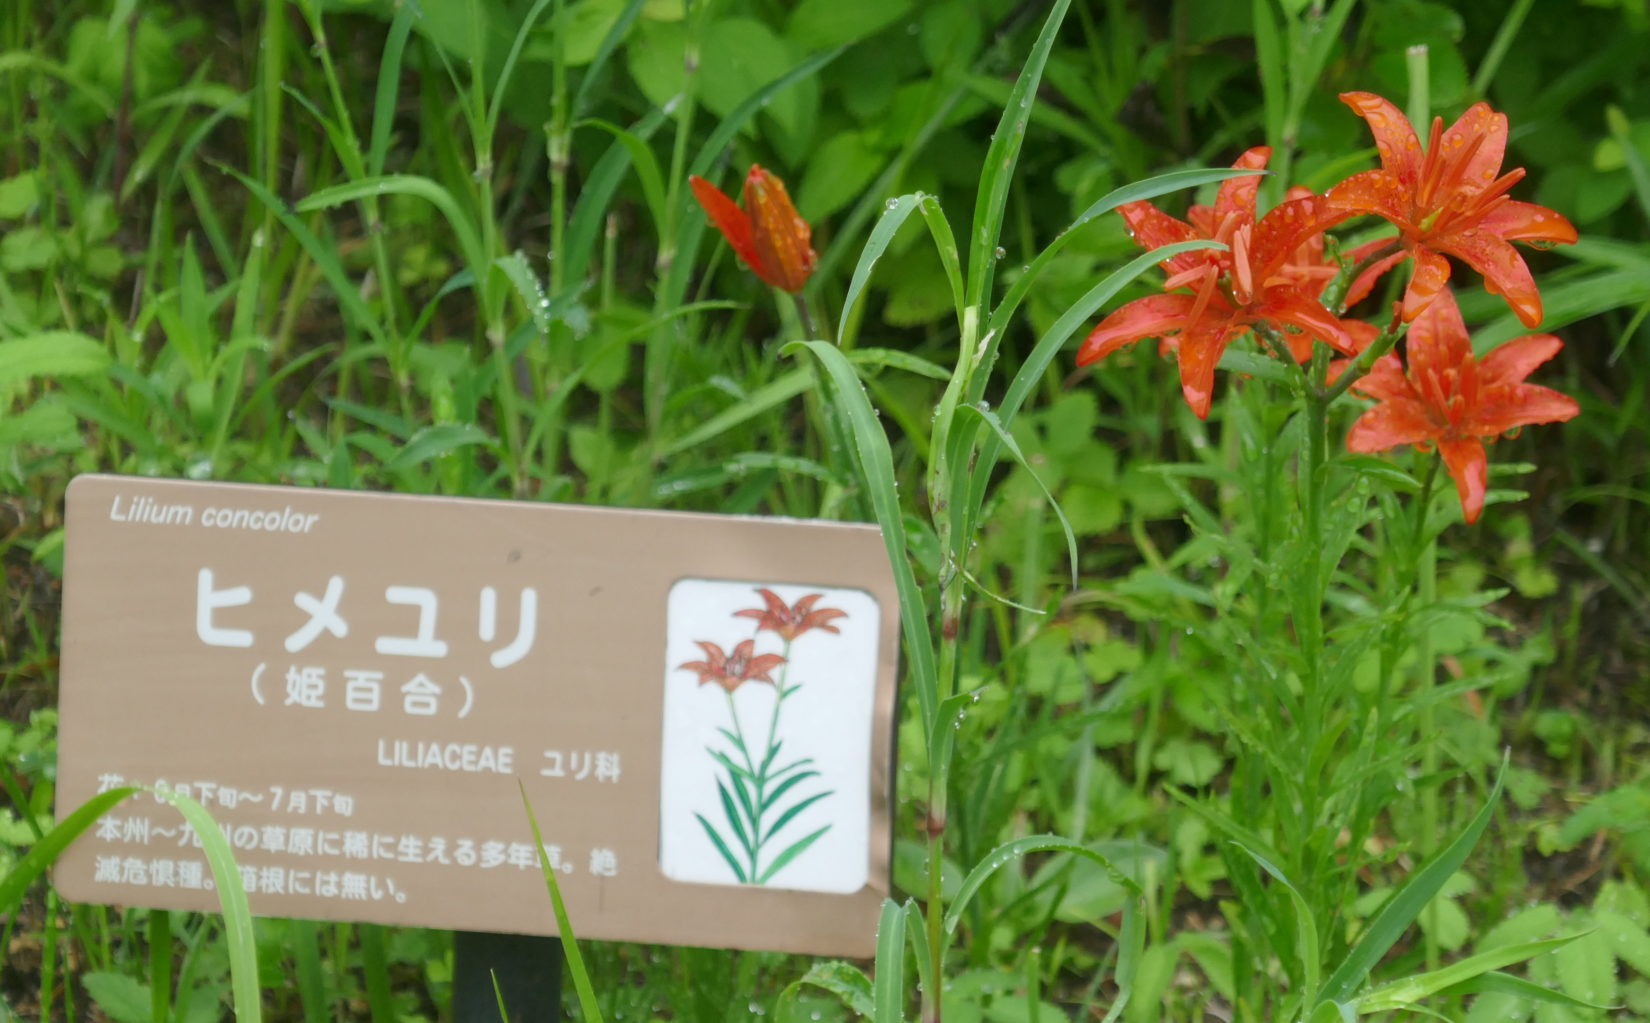 Liliums flowering in the wetland